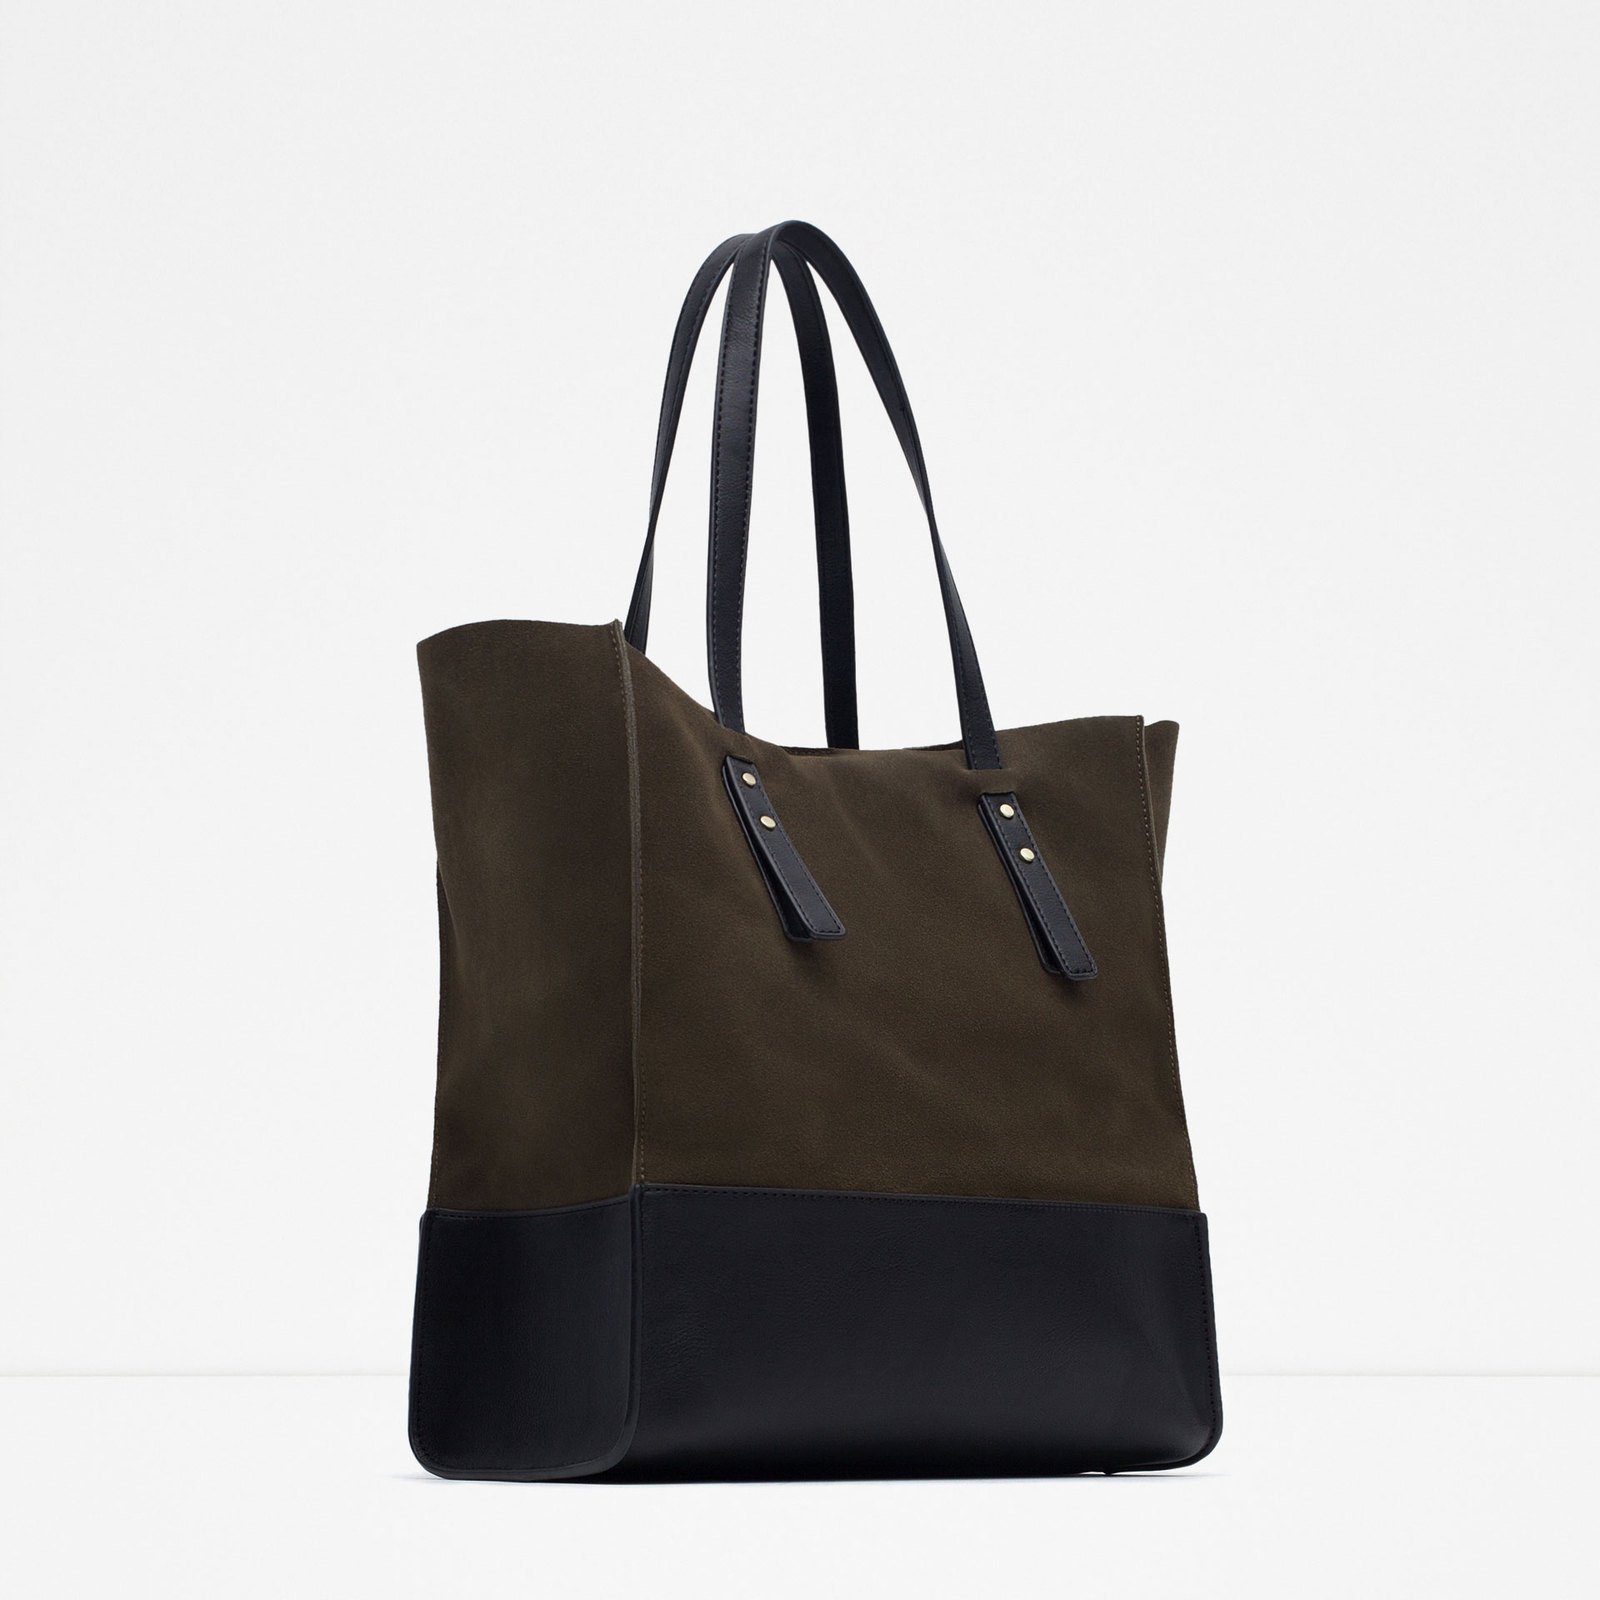 Zara kombinált bőr bevásárló táska 2015.10.15 fotója